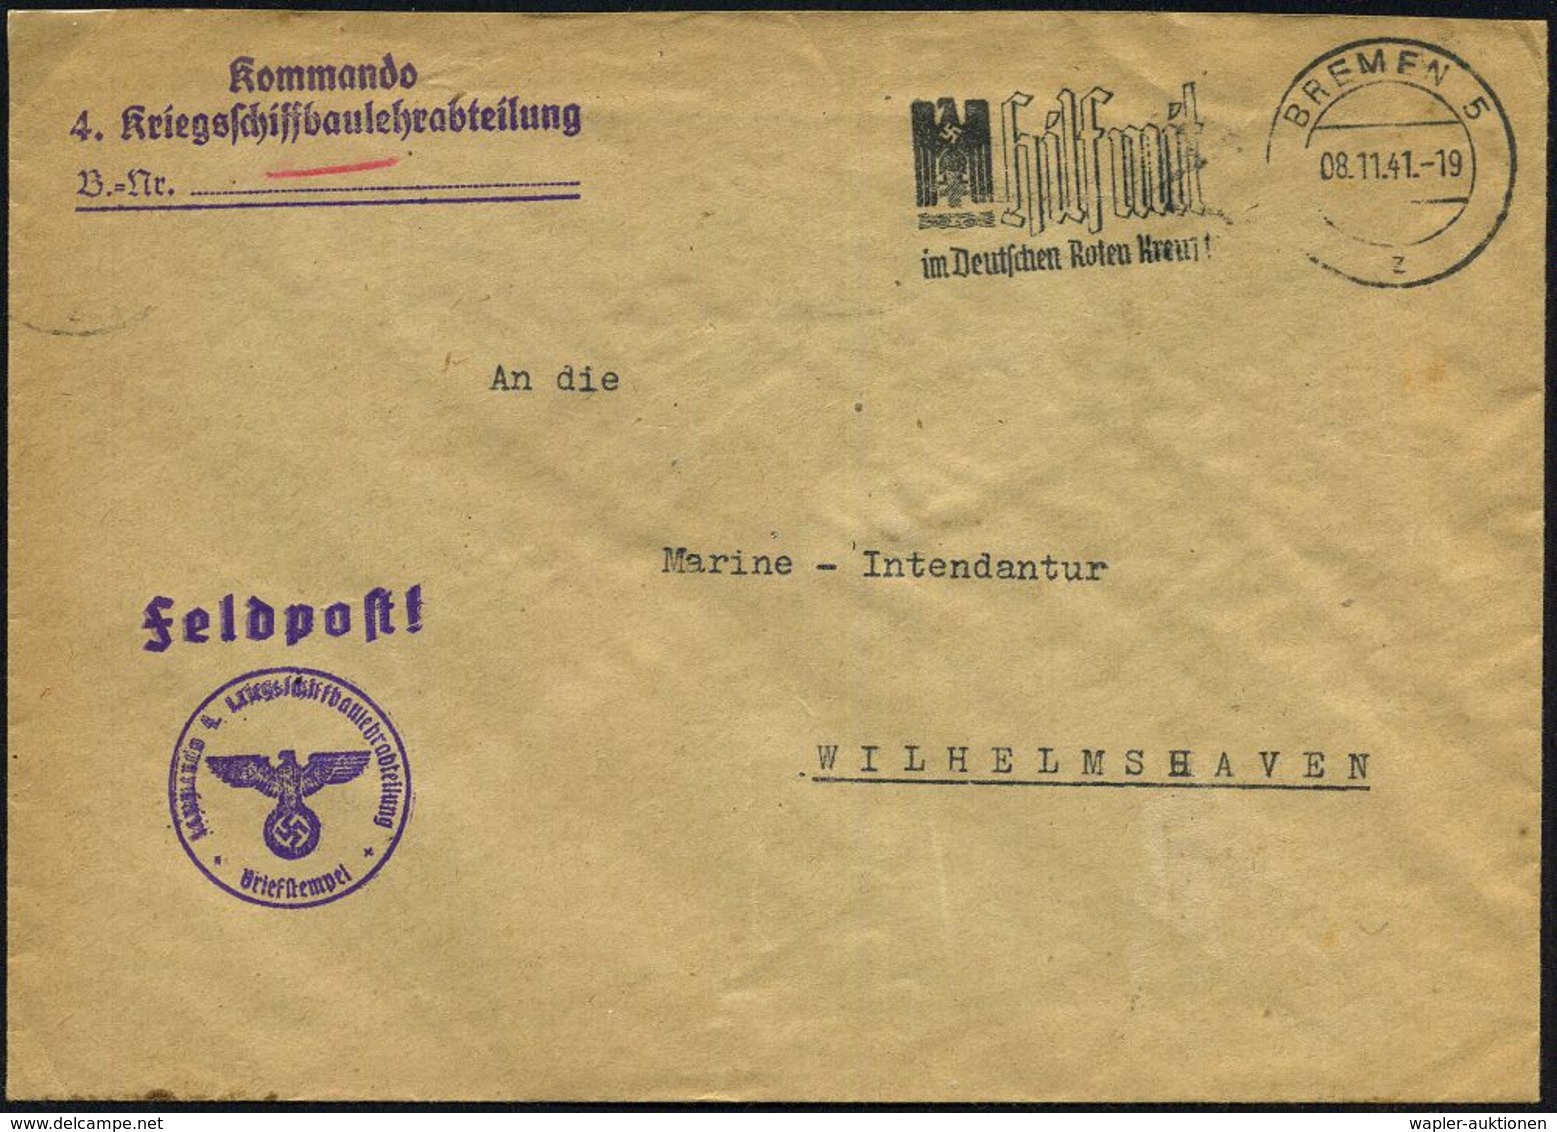 BREMEN 5/ S/ Ein/ Postscheckkonto.. #bzw.# BREMEN 5/ Z/ Hilf Mit/ Im Deutschen Roten Kreuz! 1941 (Nov.) 2 Verschiedene M - Marítimo